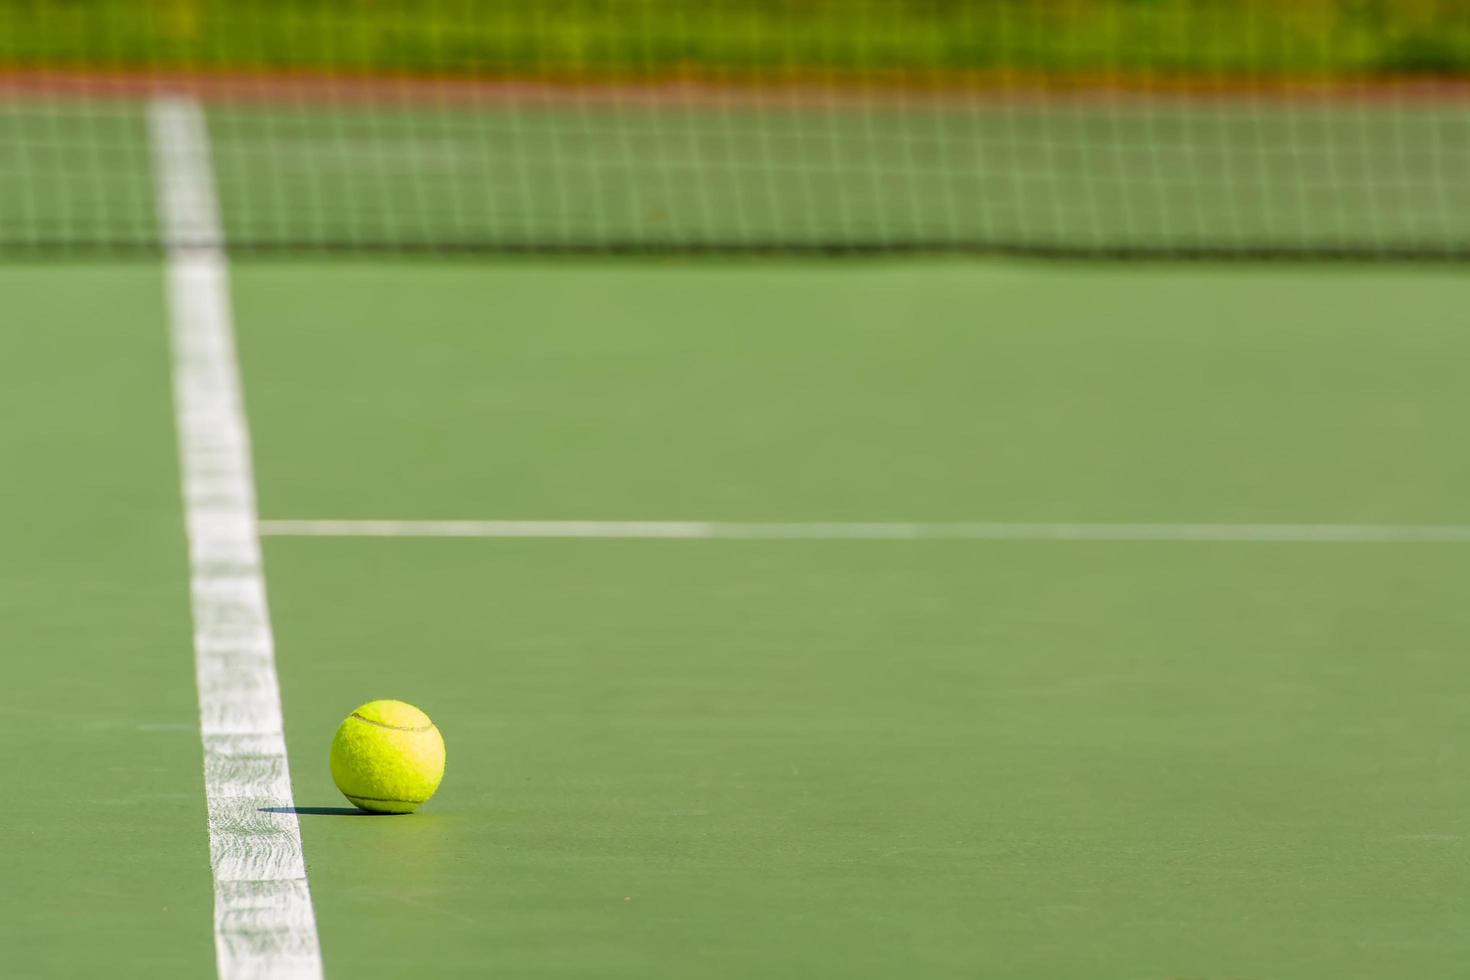 pallina da tennis verde foto